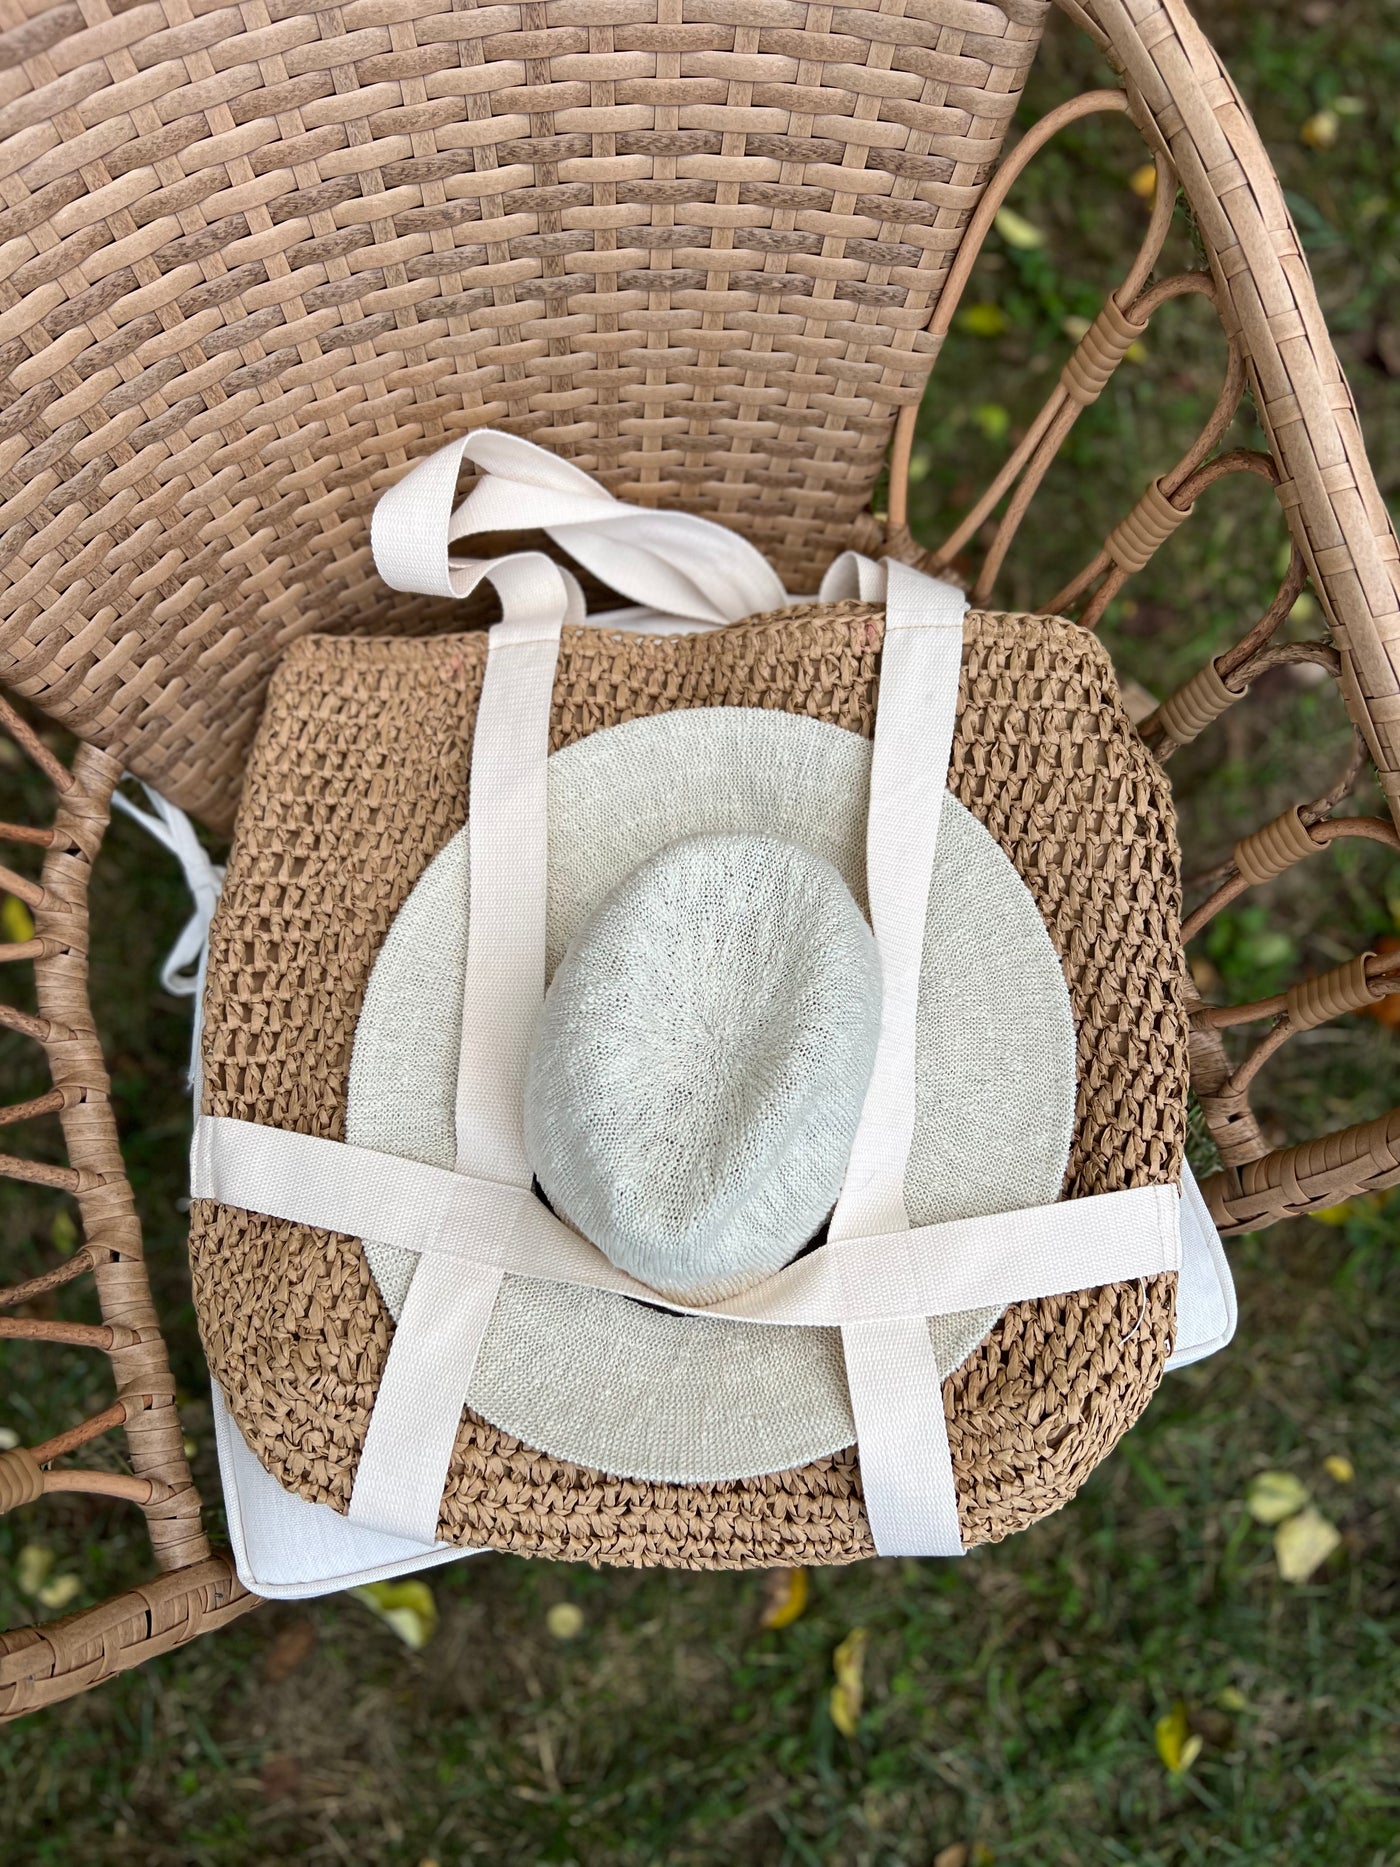 Straw Weave Bag - Hat Holder Bag